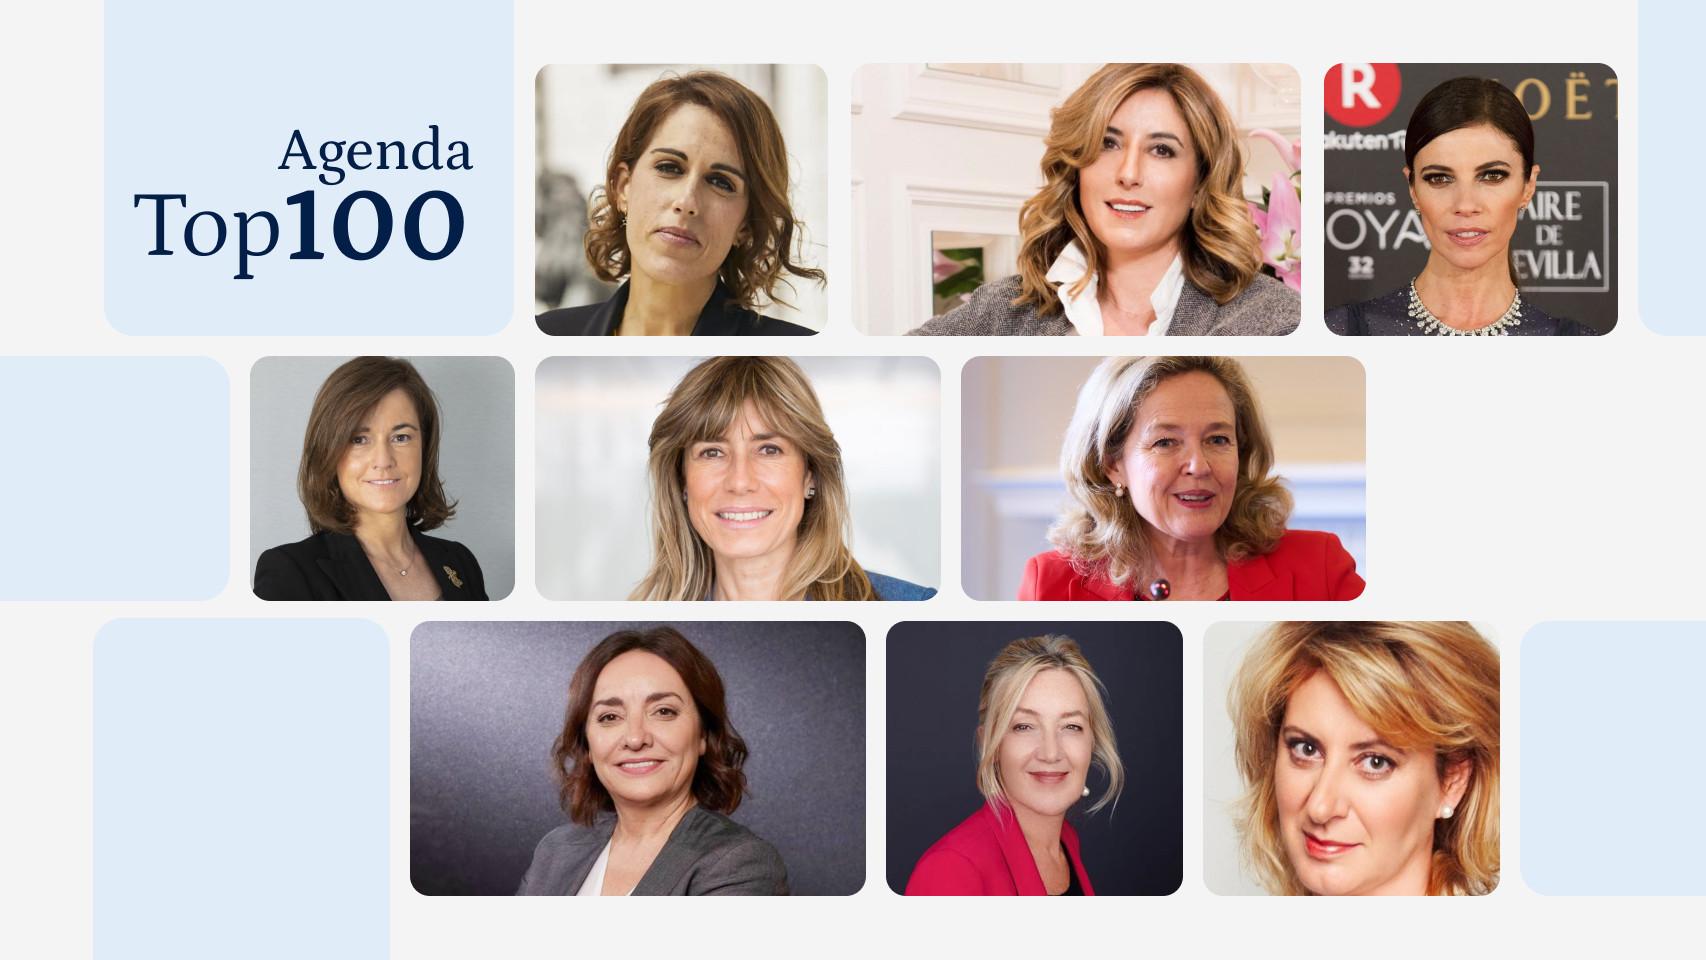 La agenda semanal de las 'Top 100 Mujeres Líderes en España'. Imagen: Lina Smith.